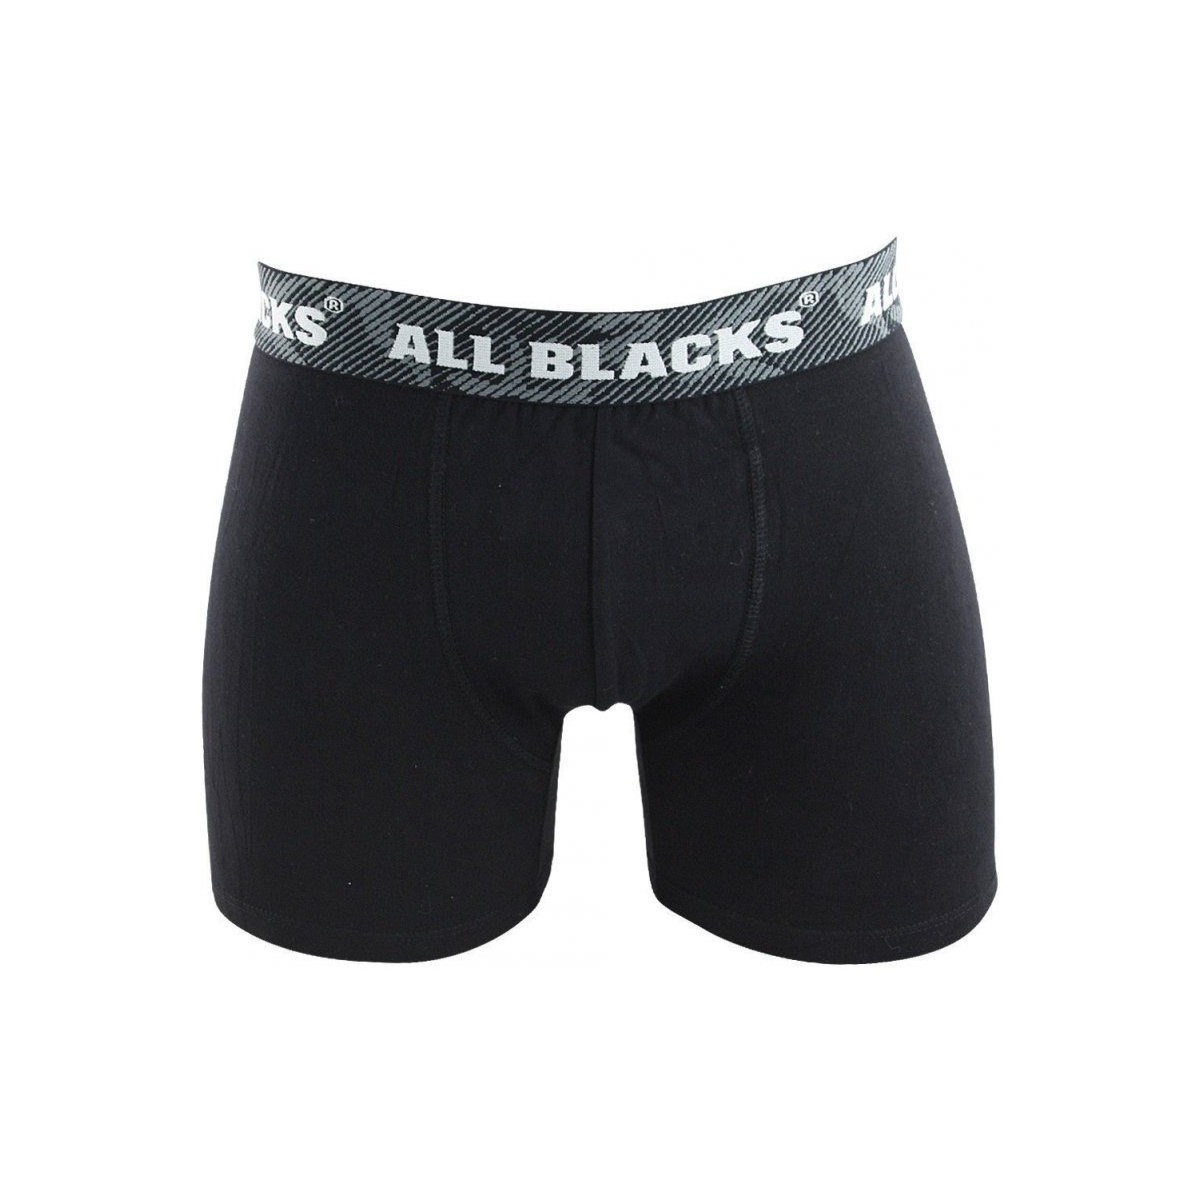 Sous-vêtements Homme Boxers All Blacks Boxer Homme Coton CAMASS1 Noir Noir